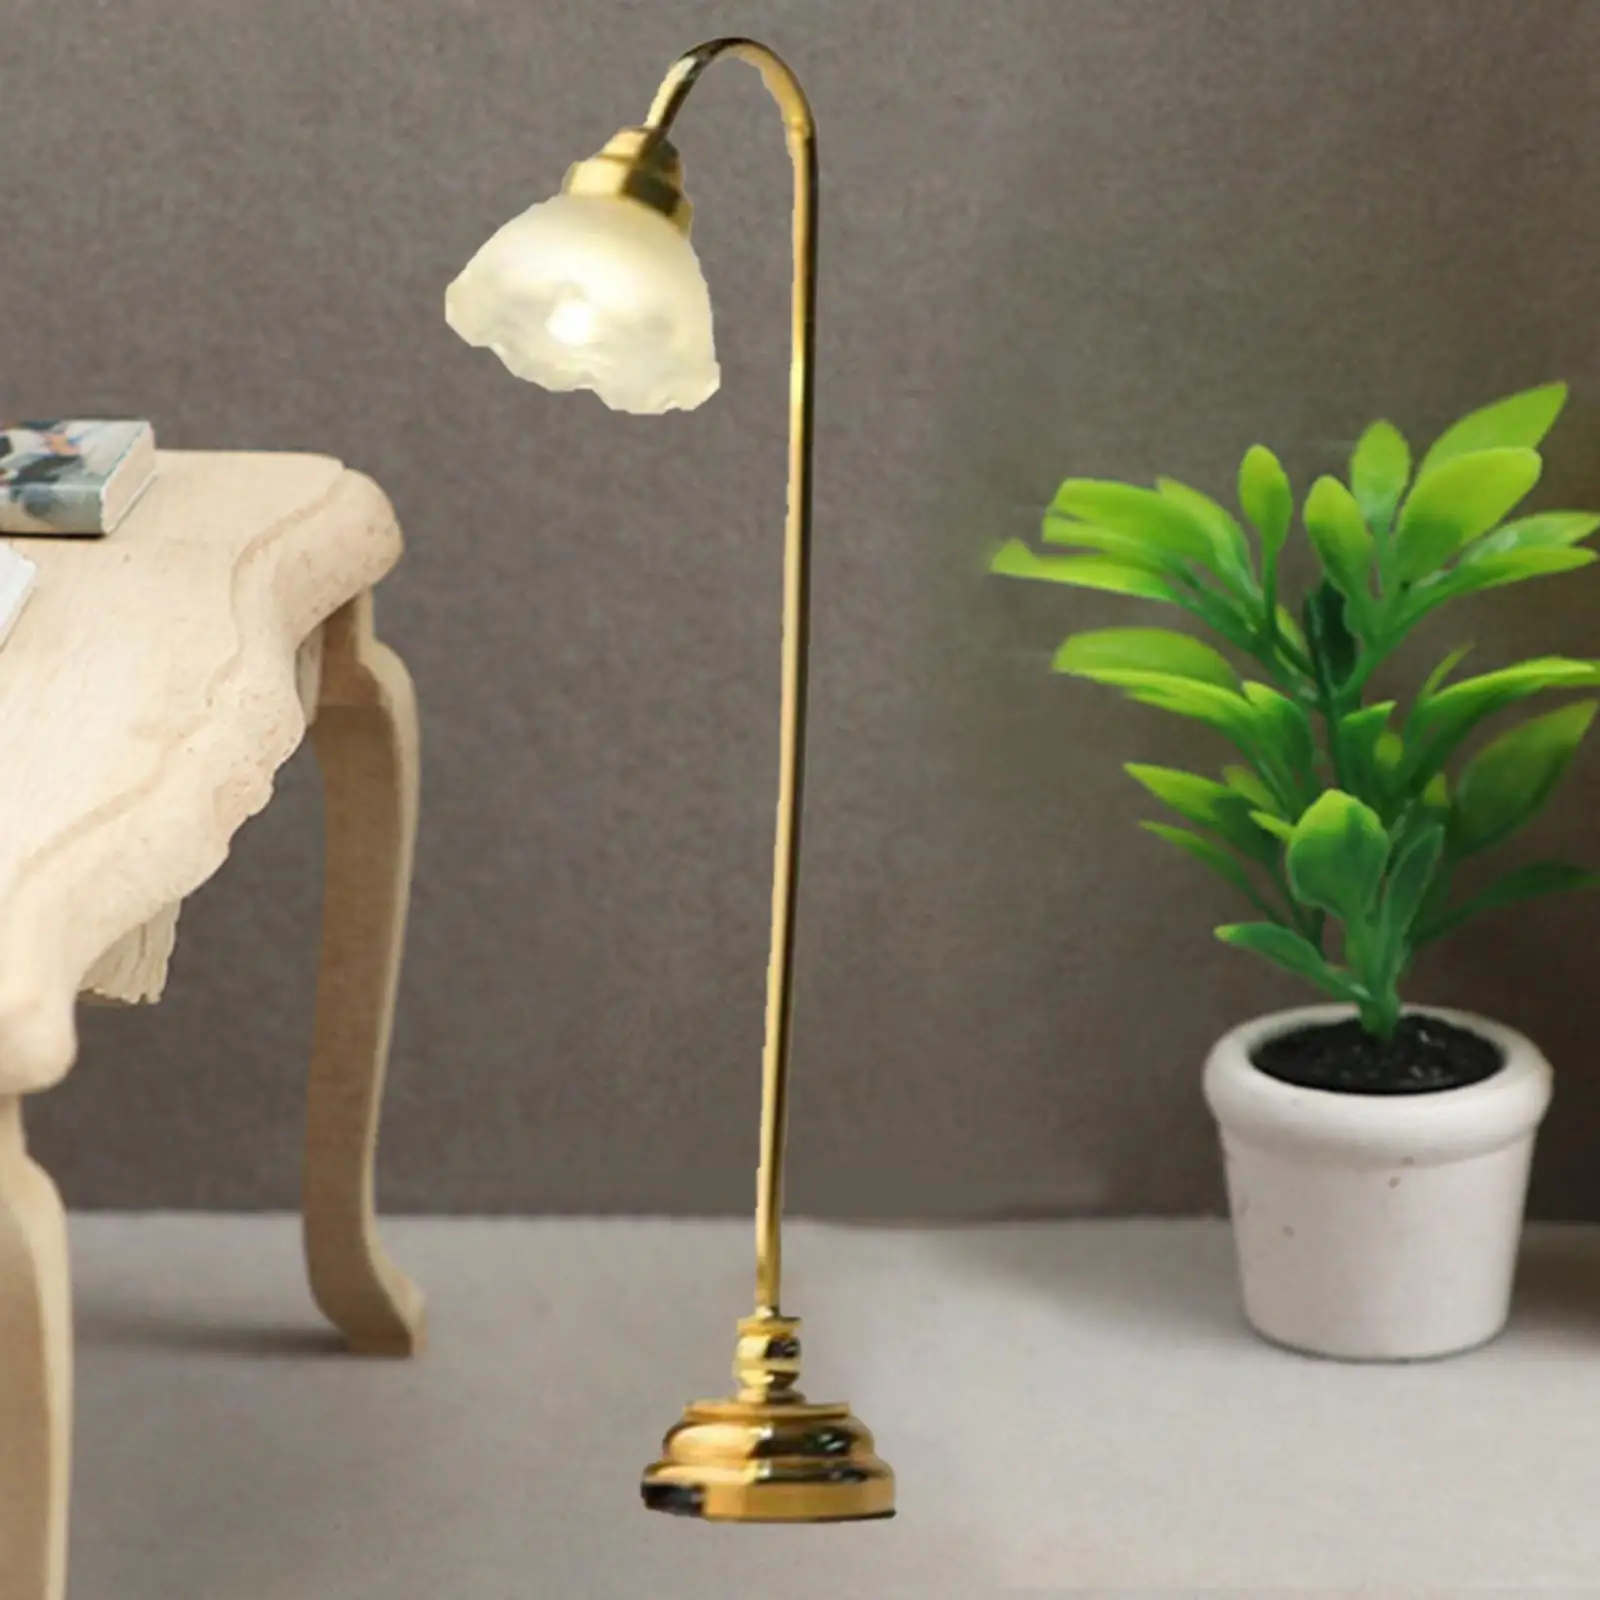 1:12 Miniature Dollhouse Floor Lamp Light Model LED Mini Lamp Miniature Scene Light for Living Room Study Bedroom Decor